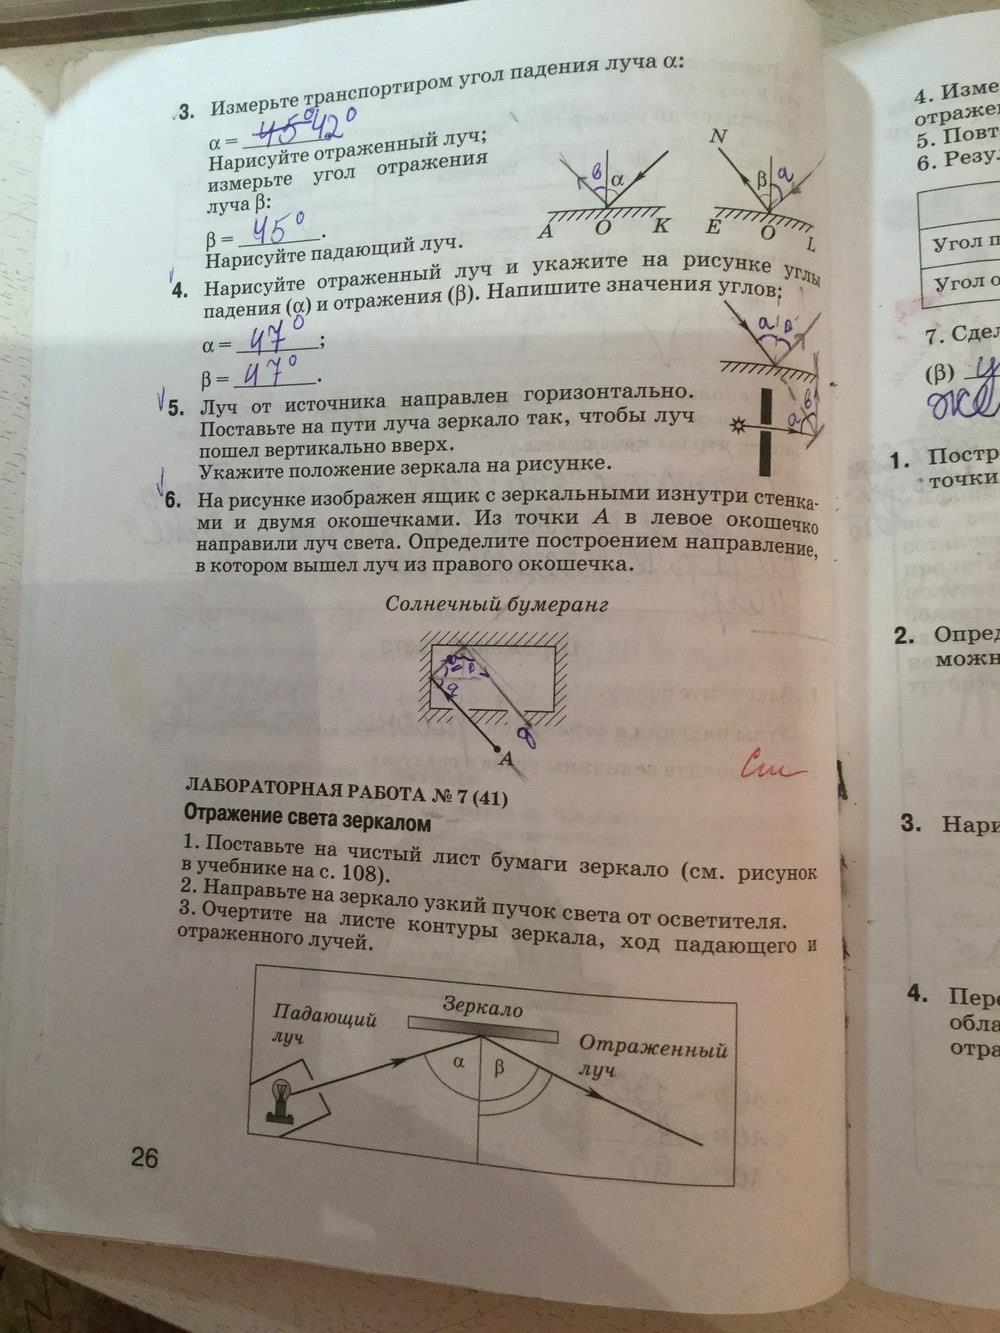 гдз 6 класс рабочая тетрадь страница 26 физика химия Гуревич, Краснов, Нотов, Понтак